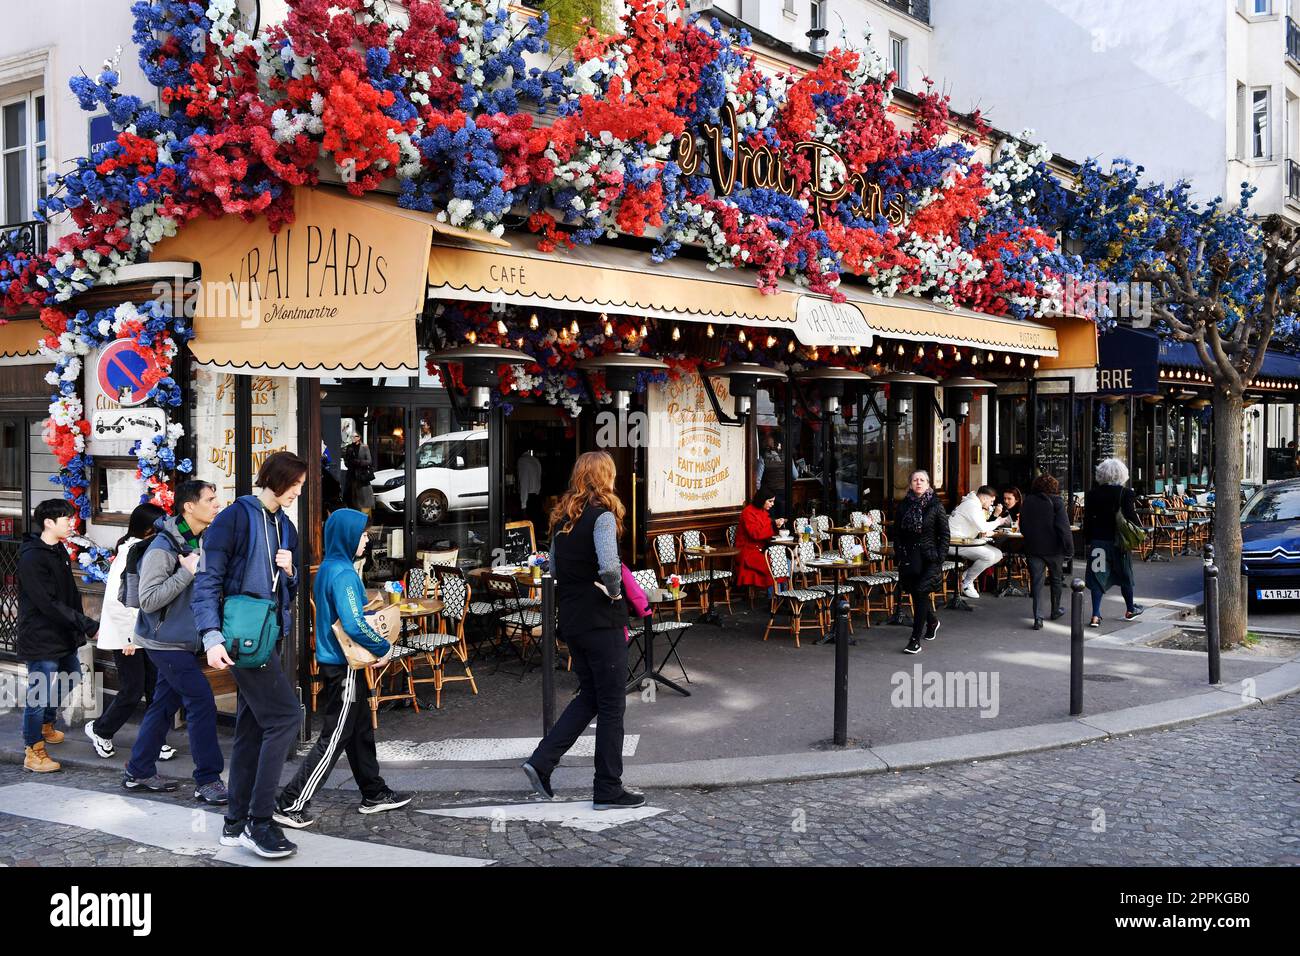 Le Vrai Paris Café - Rue des Abbesses - Montmartre - Paris - France Stock Photo